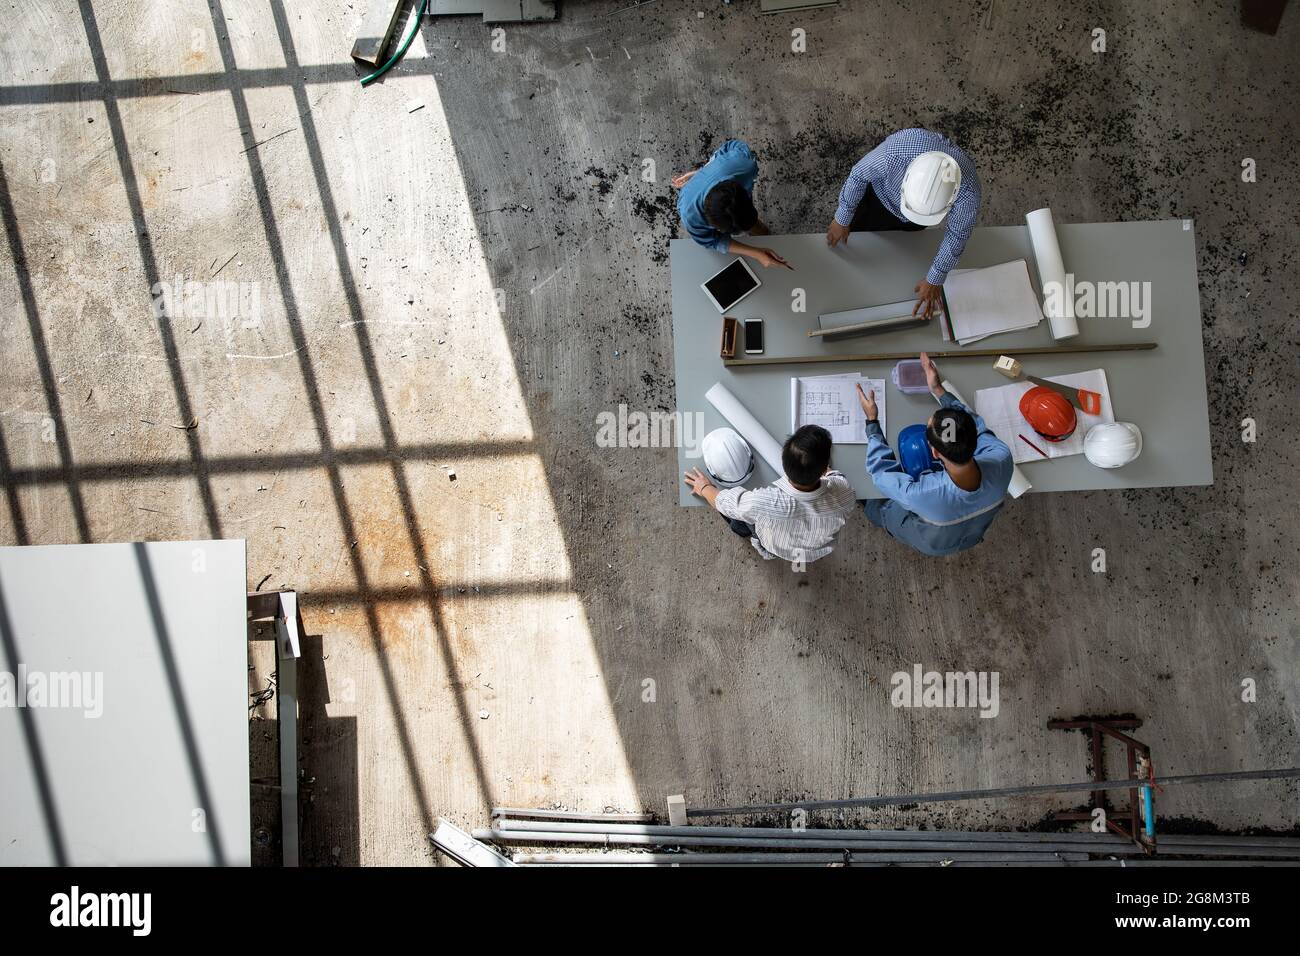 Une équipe d'ingénieurs composée de quatre personnes s'est associée pour examiner les matériaux de construction, pris sur une photo de haut-angle Banque D'Images